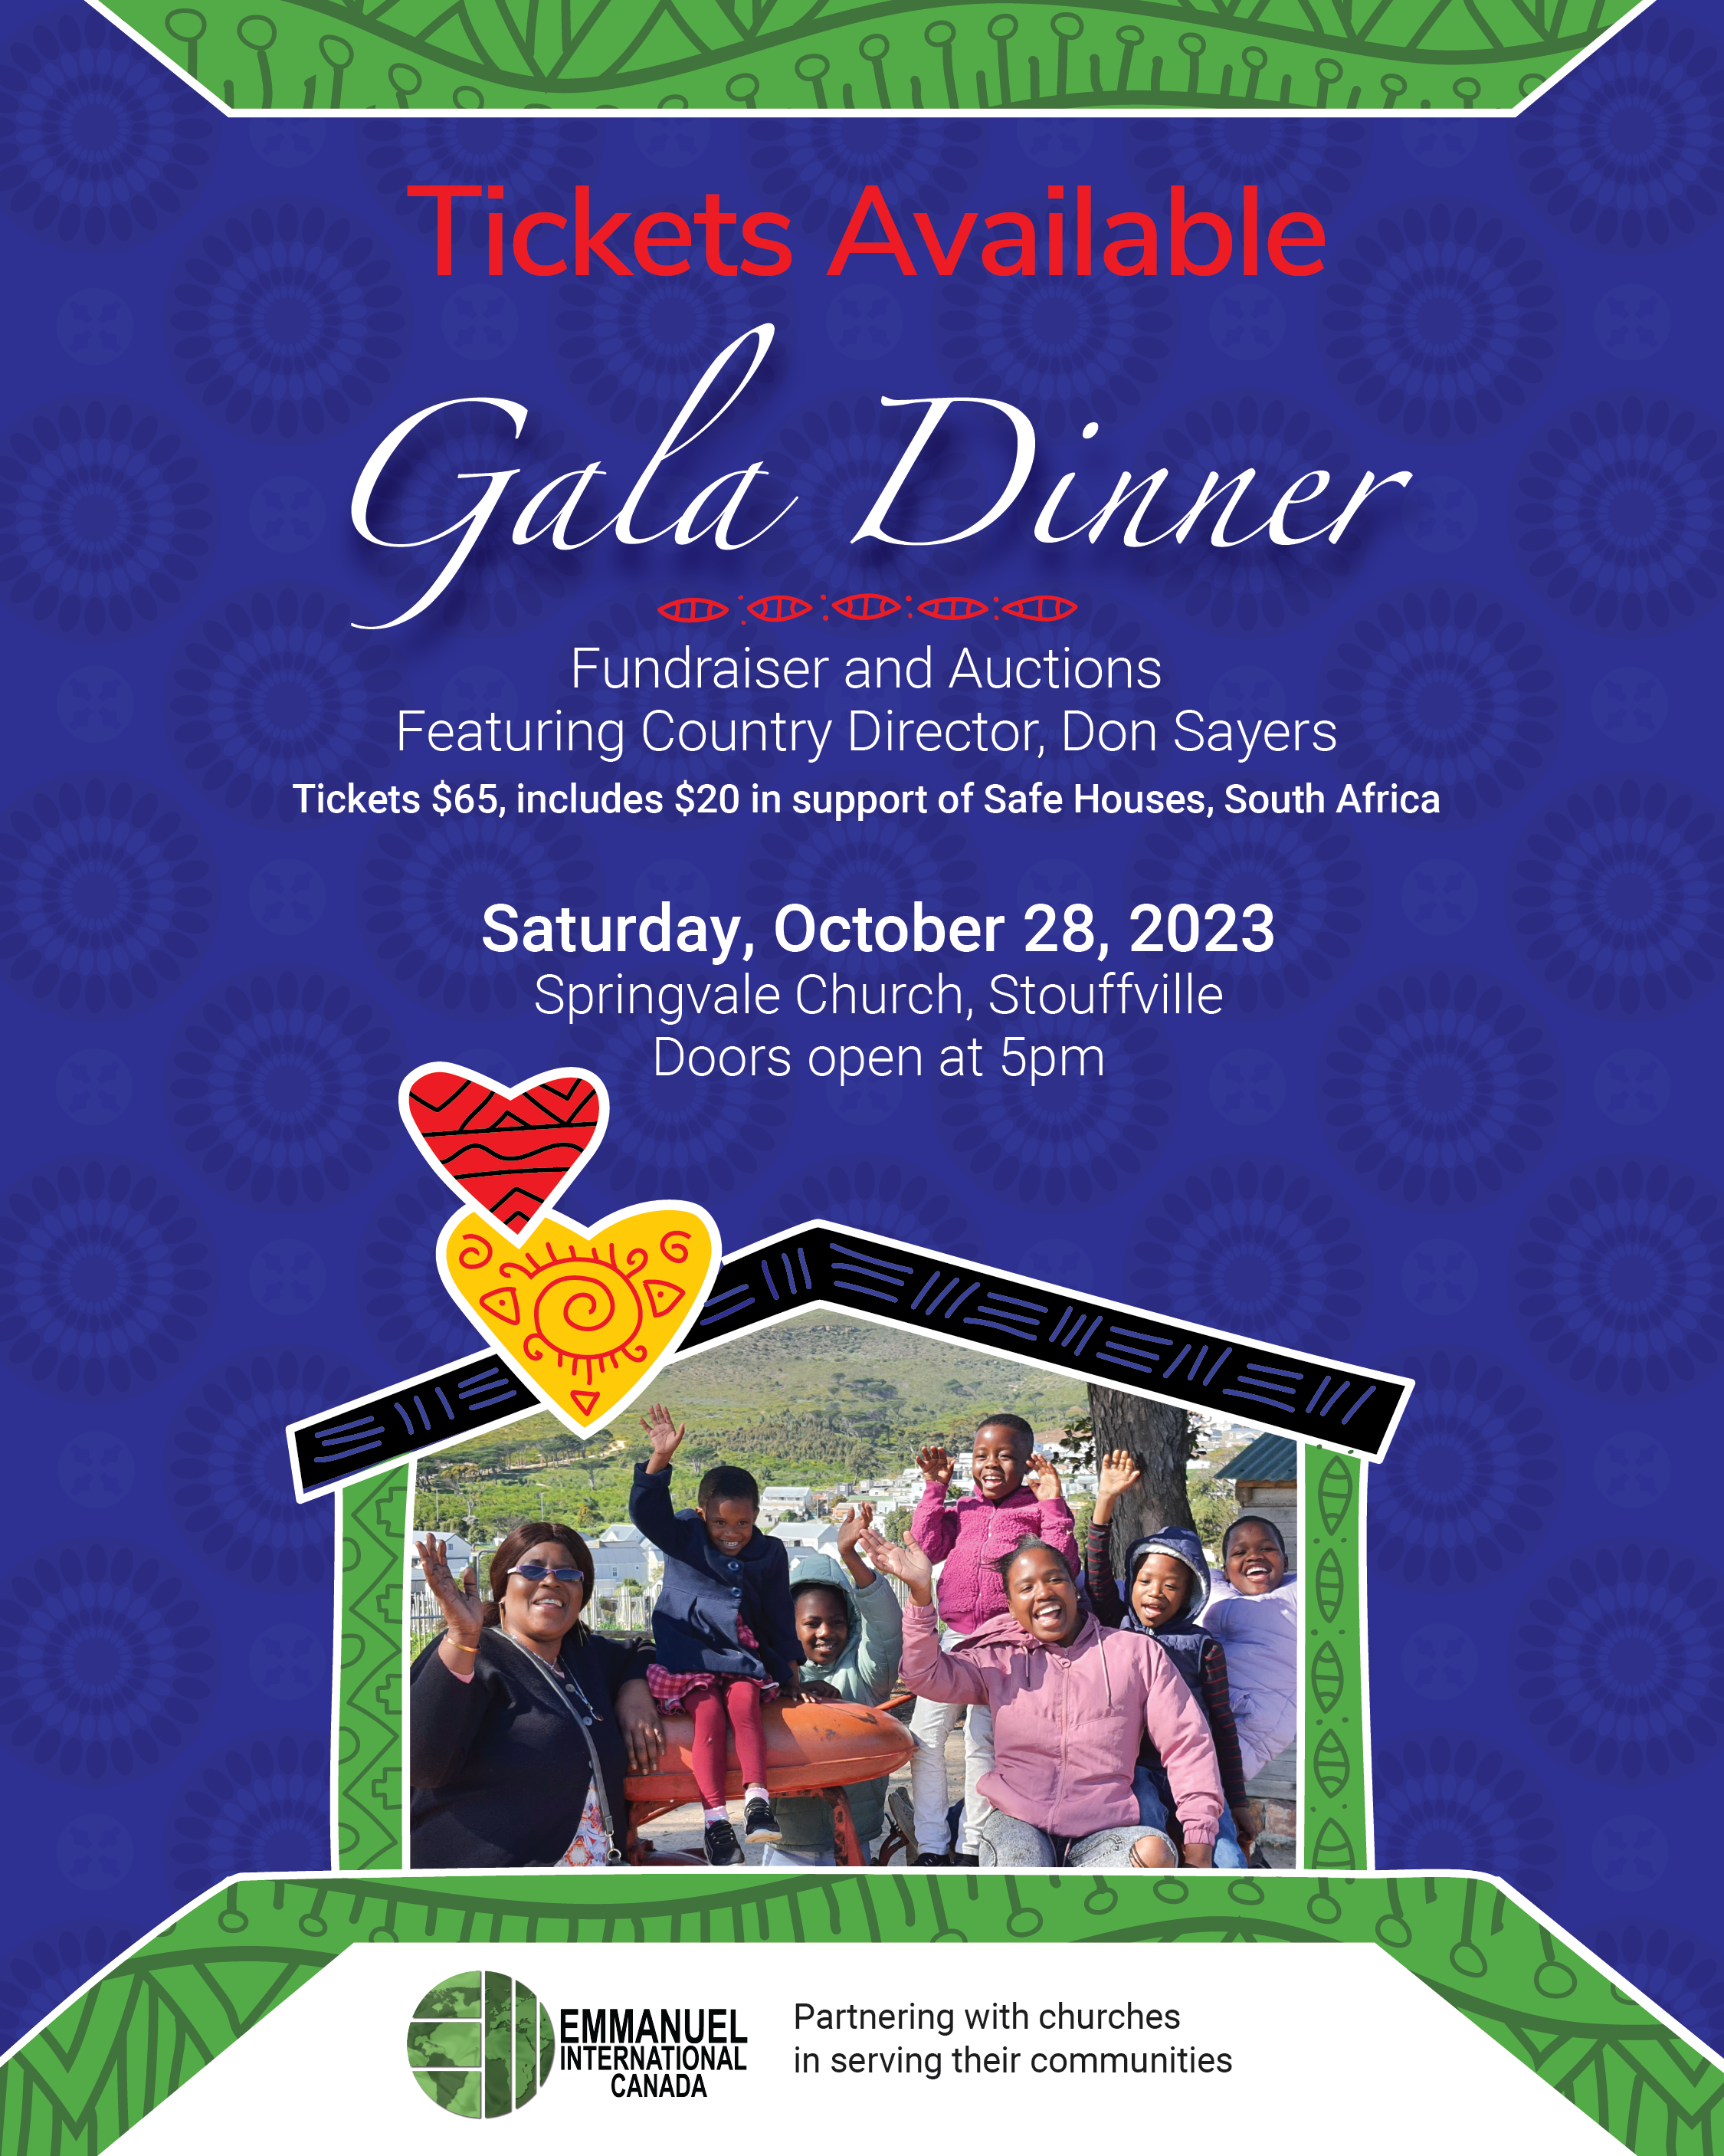 Fundraising Gala Dinner Saturday October 28, 2023 $65 per ticket